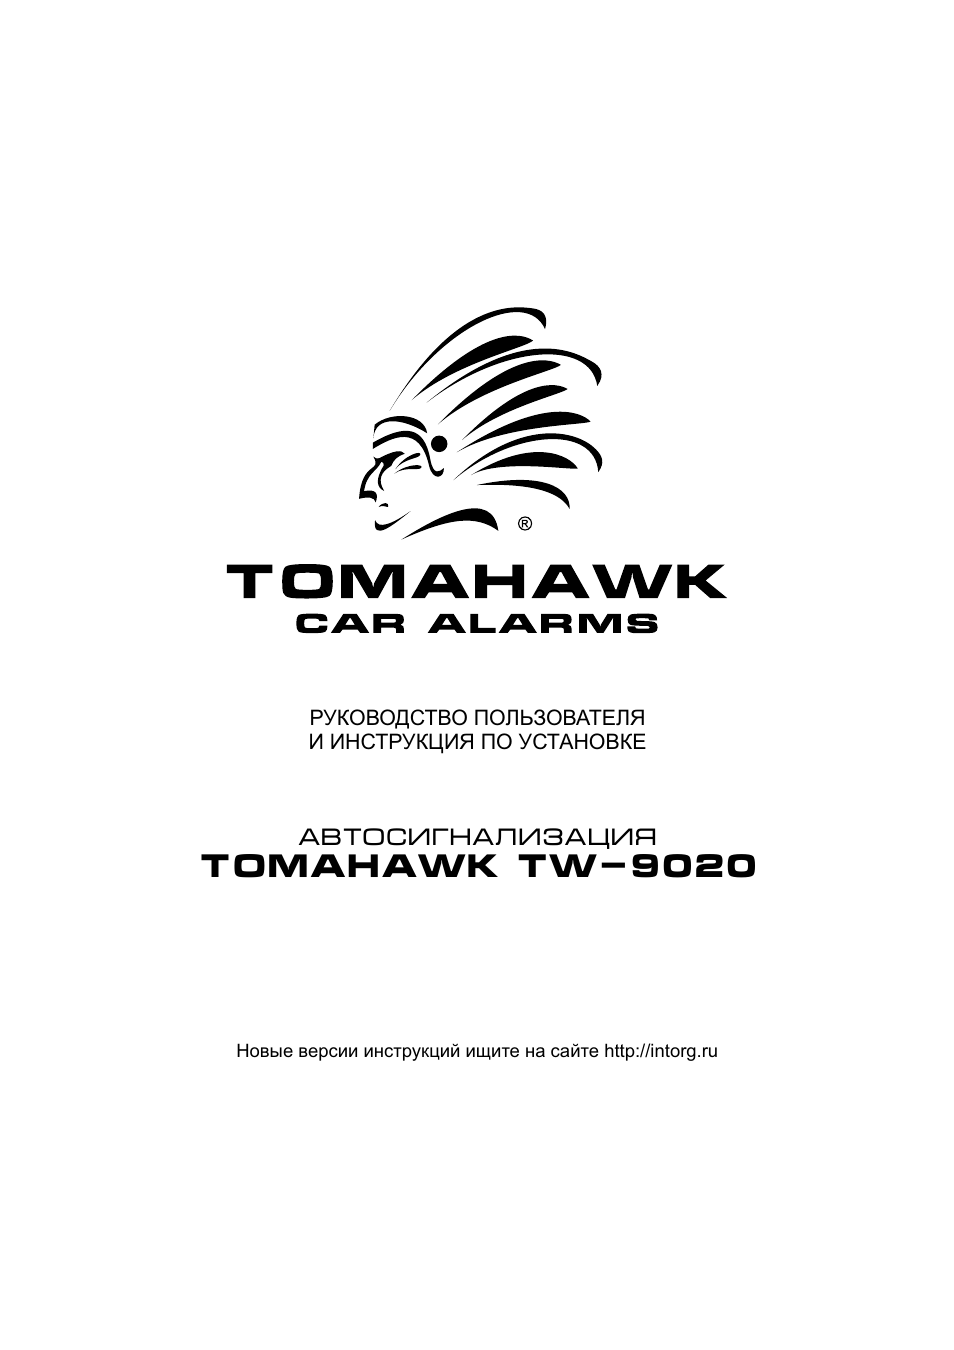 Tomahawk tw 9020 инструкция по применению